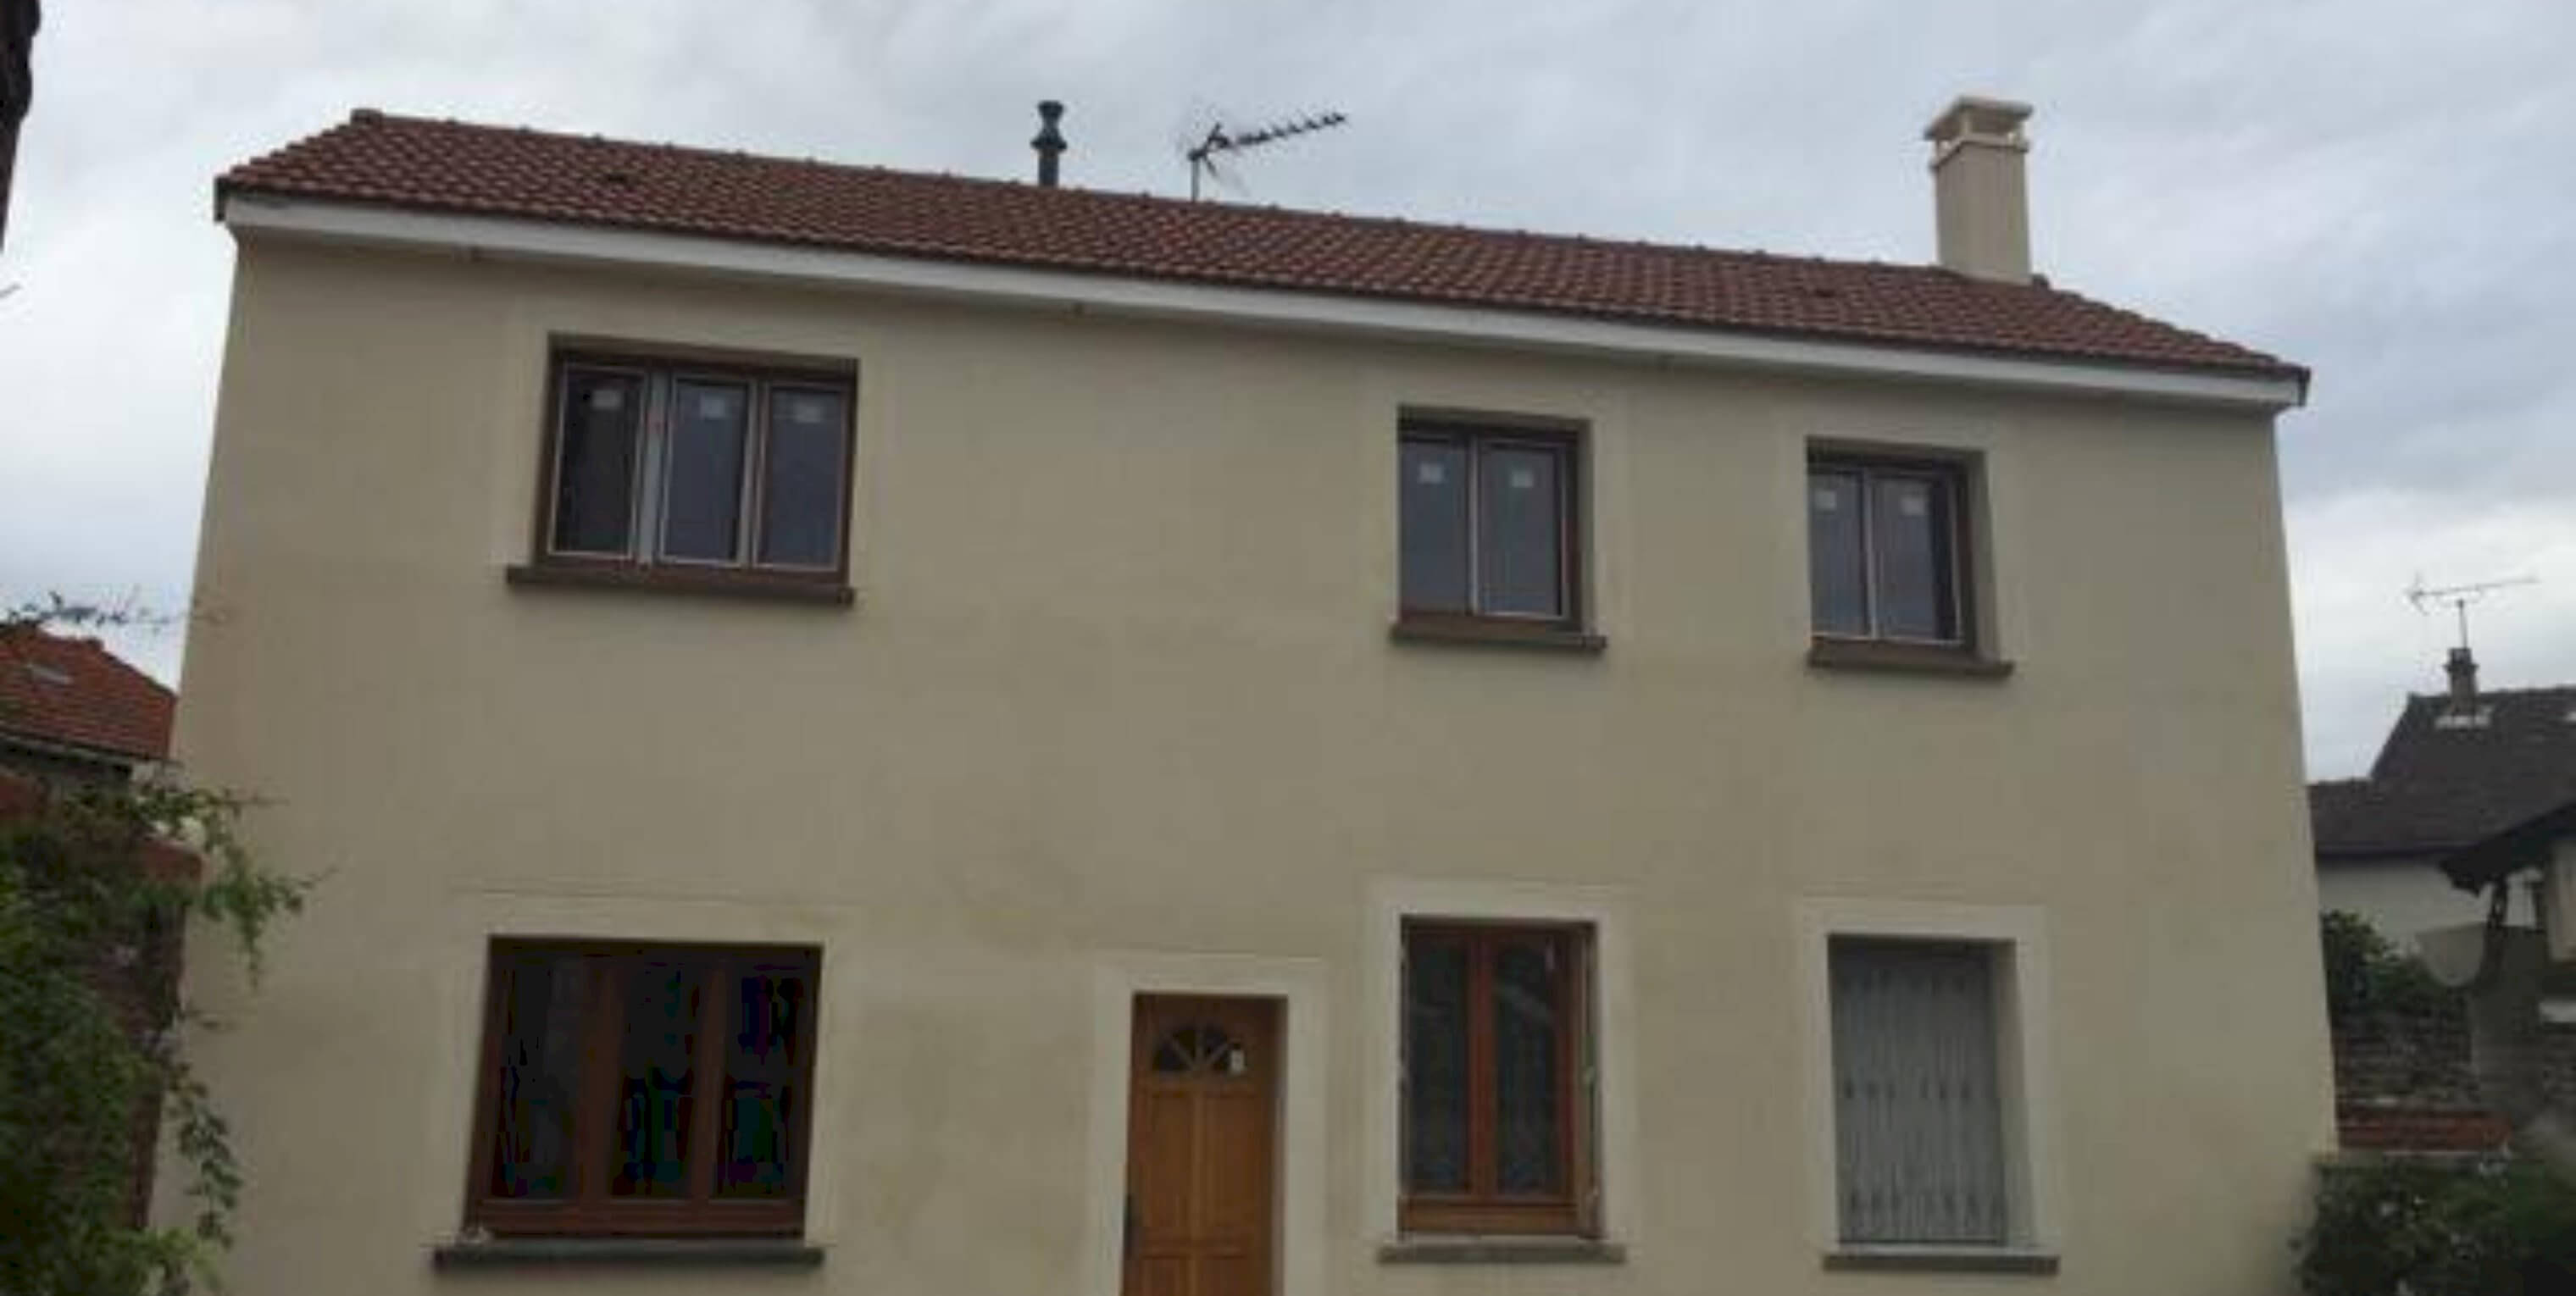 Rehaussement de maison à Nogent-sur-Marne (94) - Avenir Rénovations